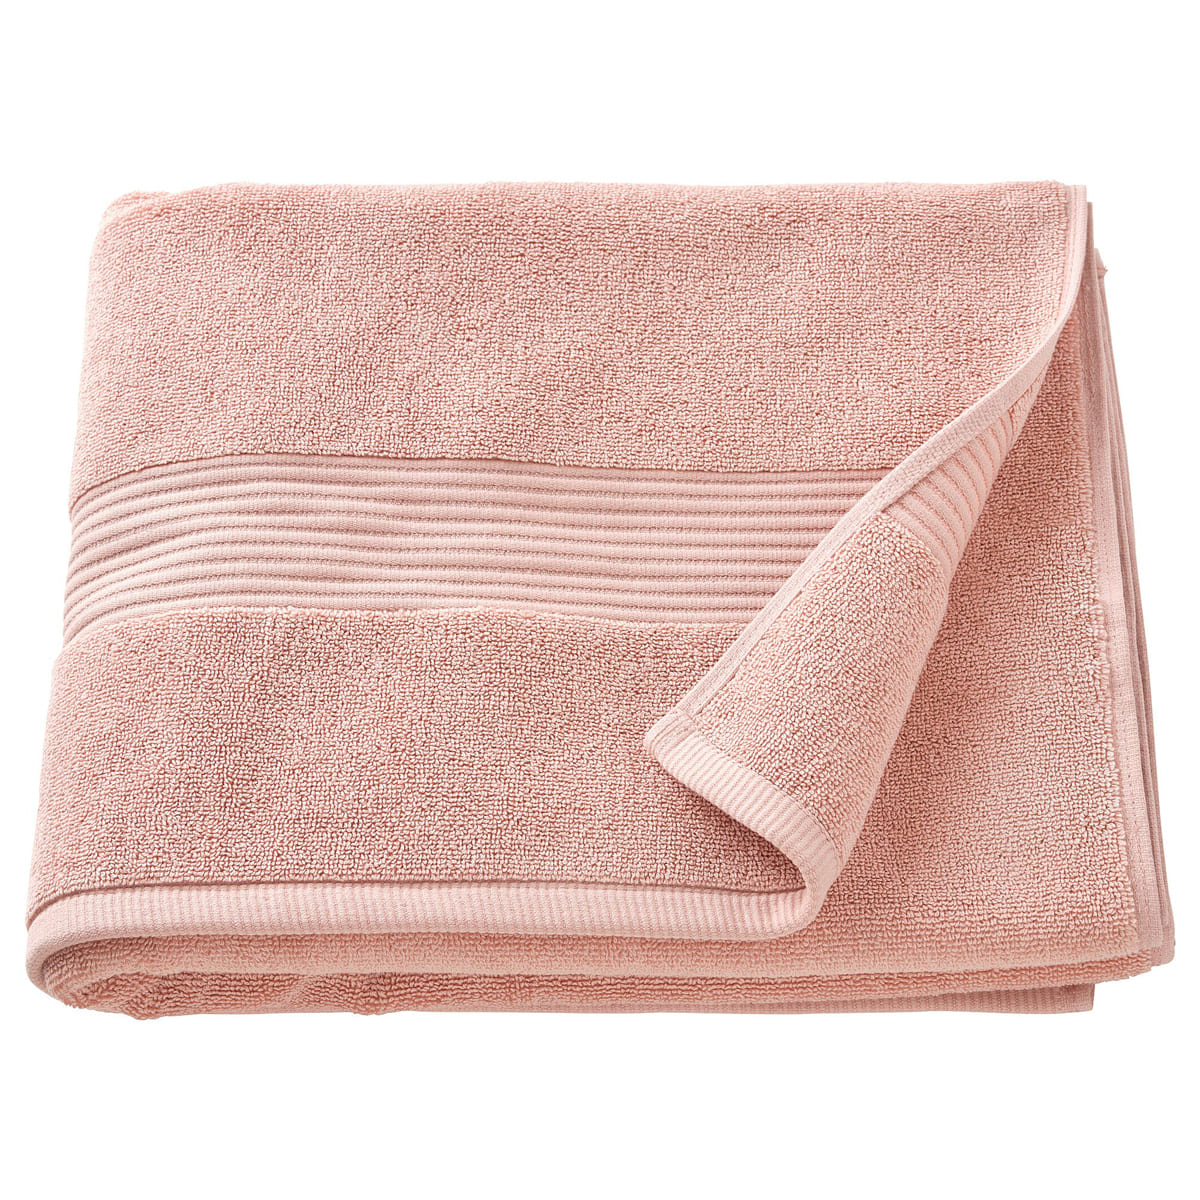 Полотенце банное Ikea Fredriksjon 70x140 см, светло-розовый одноразовое полотенце для лица q1qd косметическое полотенце для чувствительной кожи очень толстое мягкое полотенце s с сумкой на шнурке инс